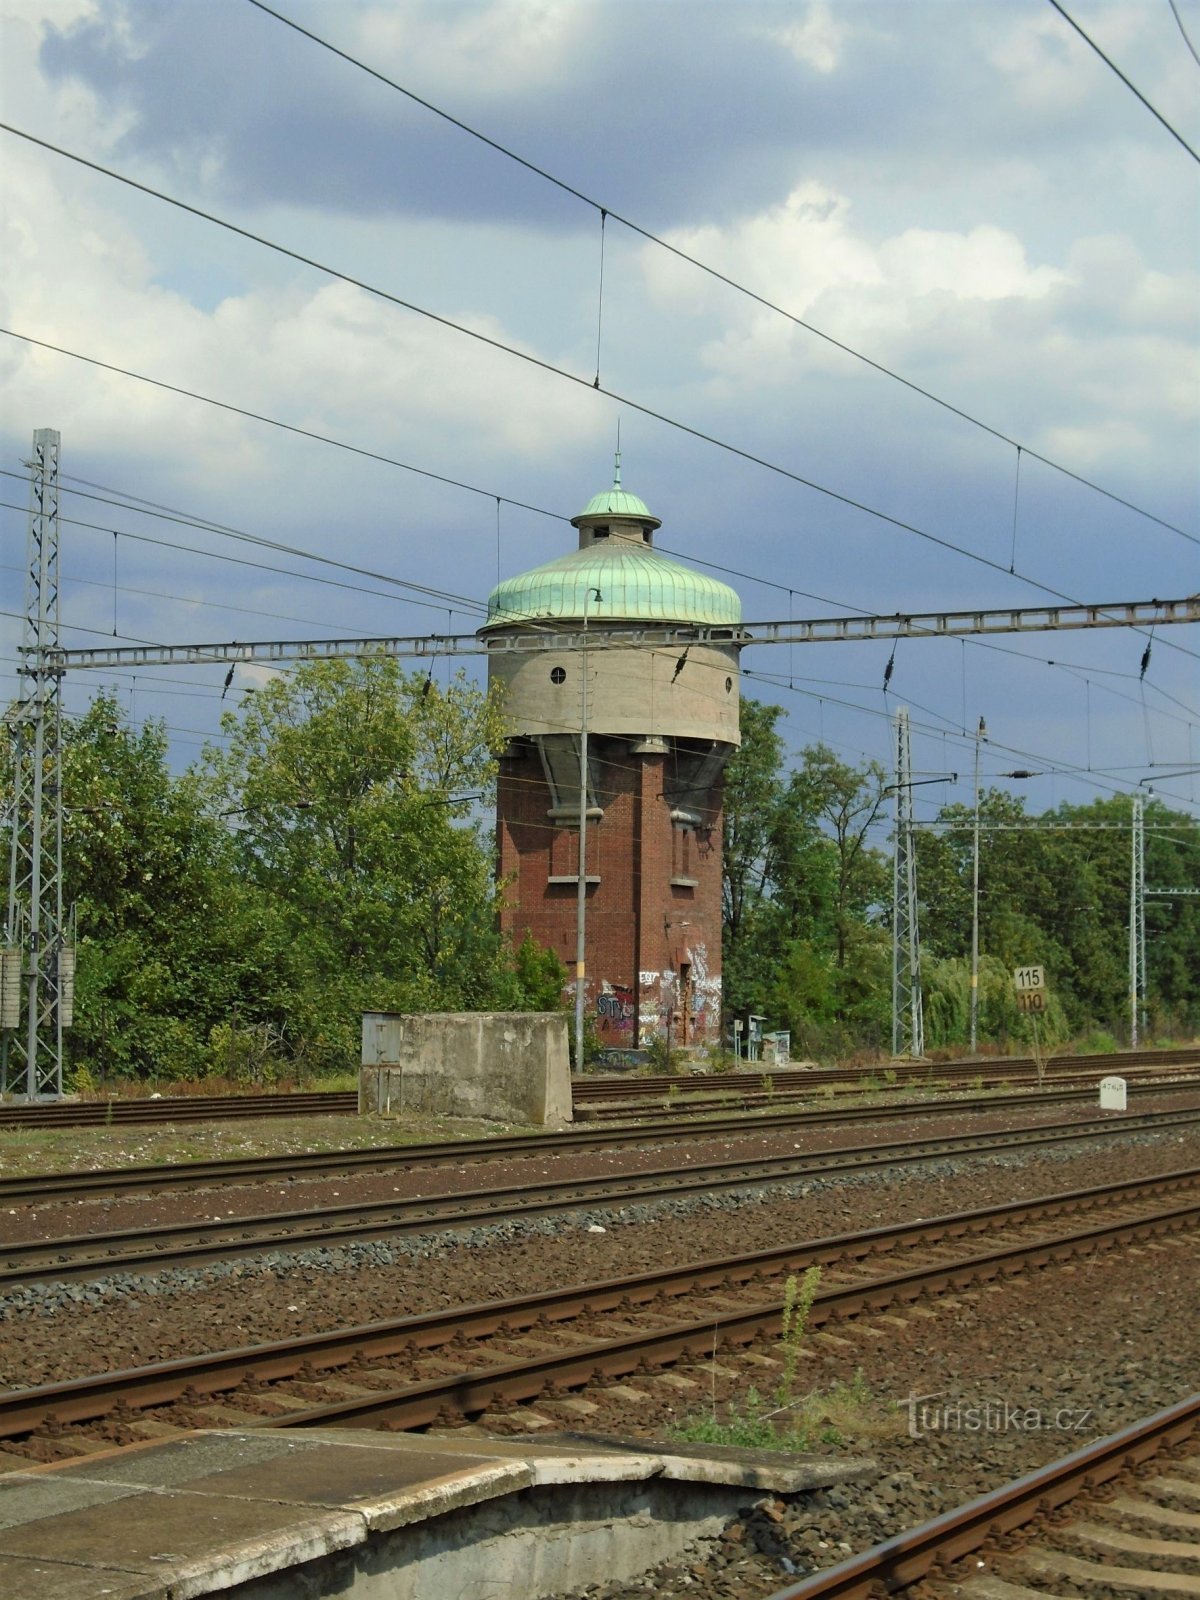 ステーション タワーの貯水池 (Roudnice nad Labem、23.7.2018 年 XNUMX 月 XNUMX 日)